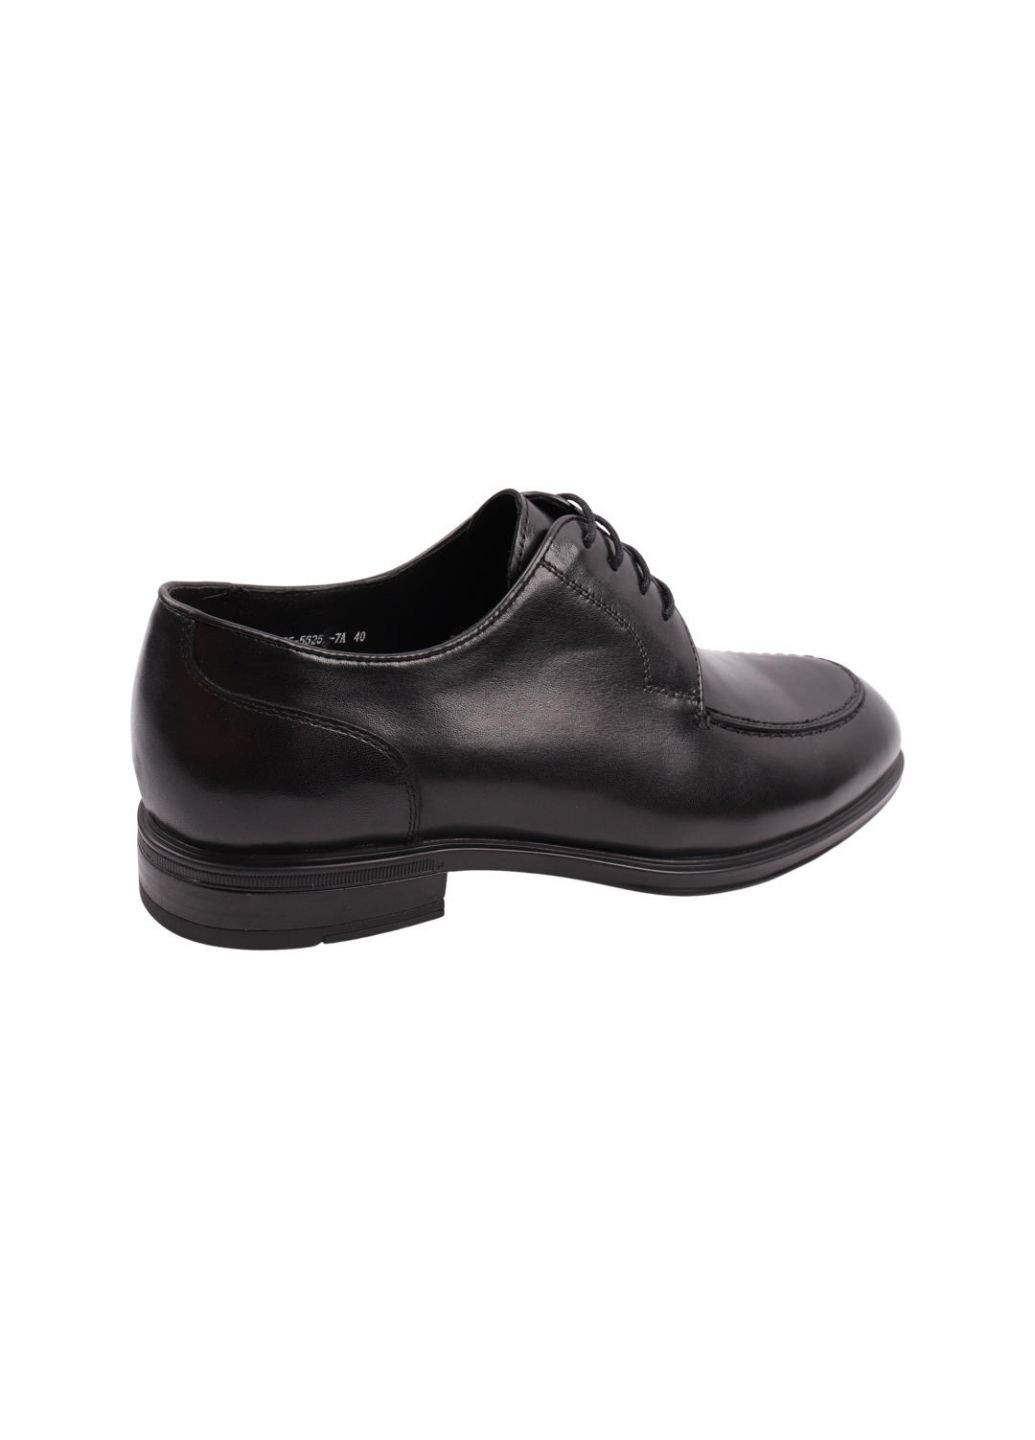 Черные туфли мужские черные натуральная кожа Roberto Paulo